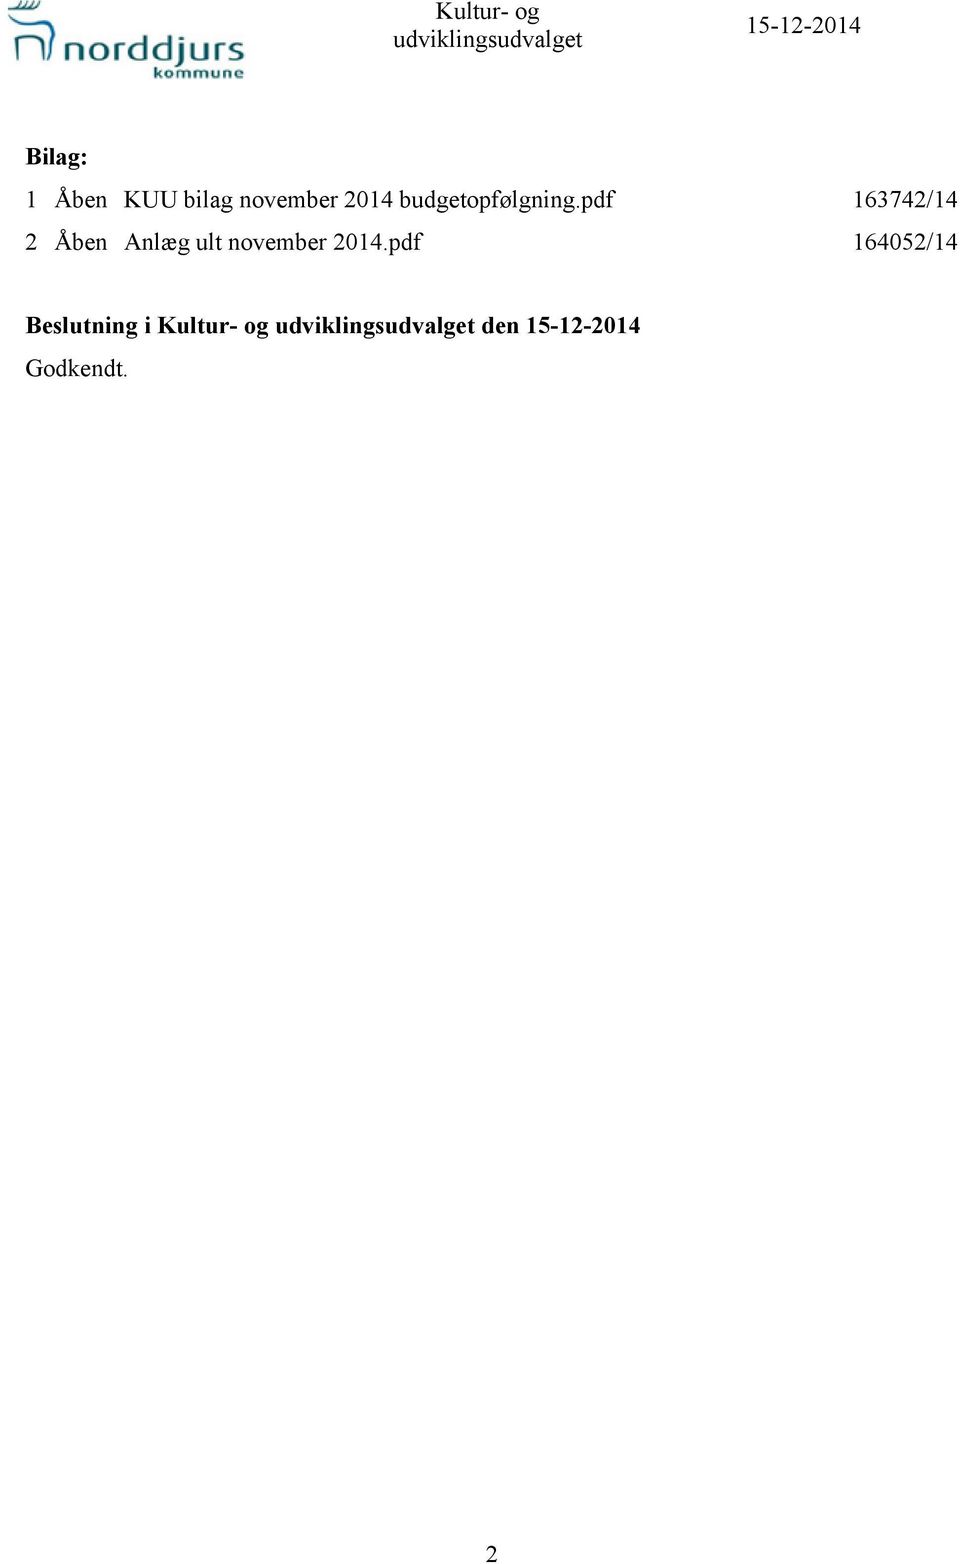 pdf 163742/14 2 Åben Anlæg ult november 2014.